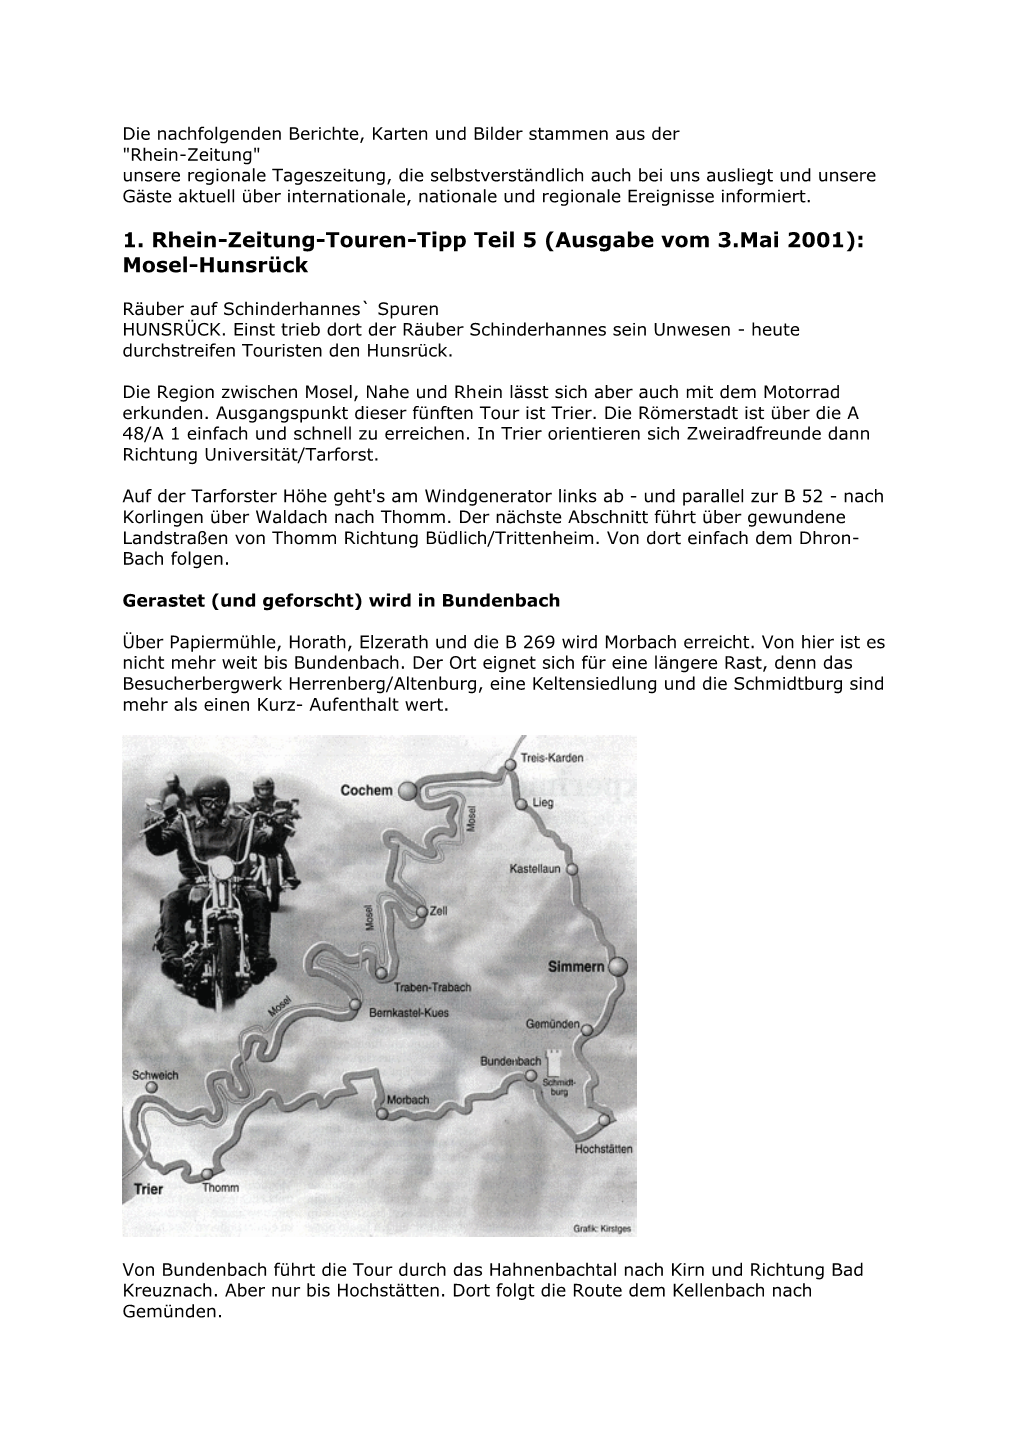 1. Rhein-Zeitung-Touren-Tipp Teil 5 (Ausgabe Vom 3.Mai 2001): Mosel-Hunsrück